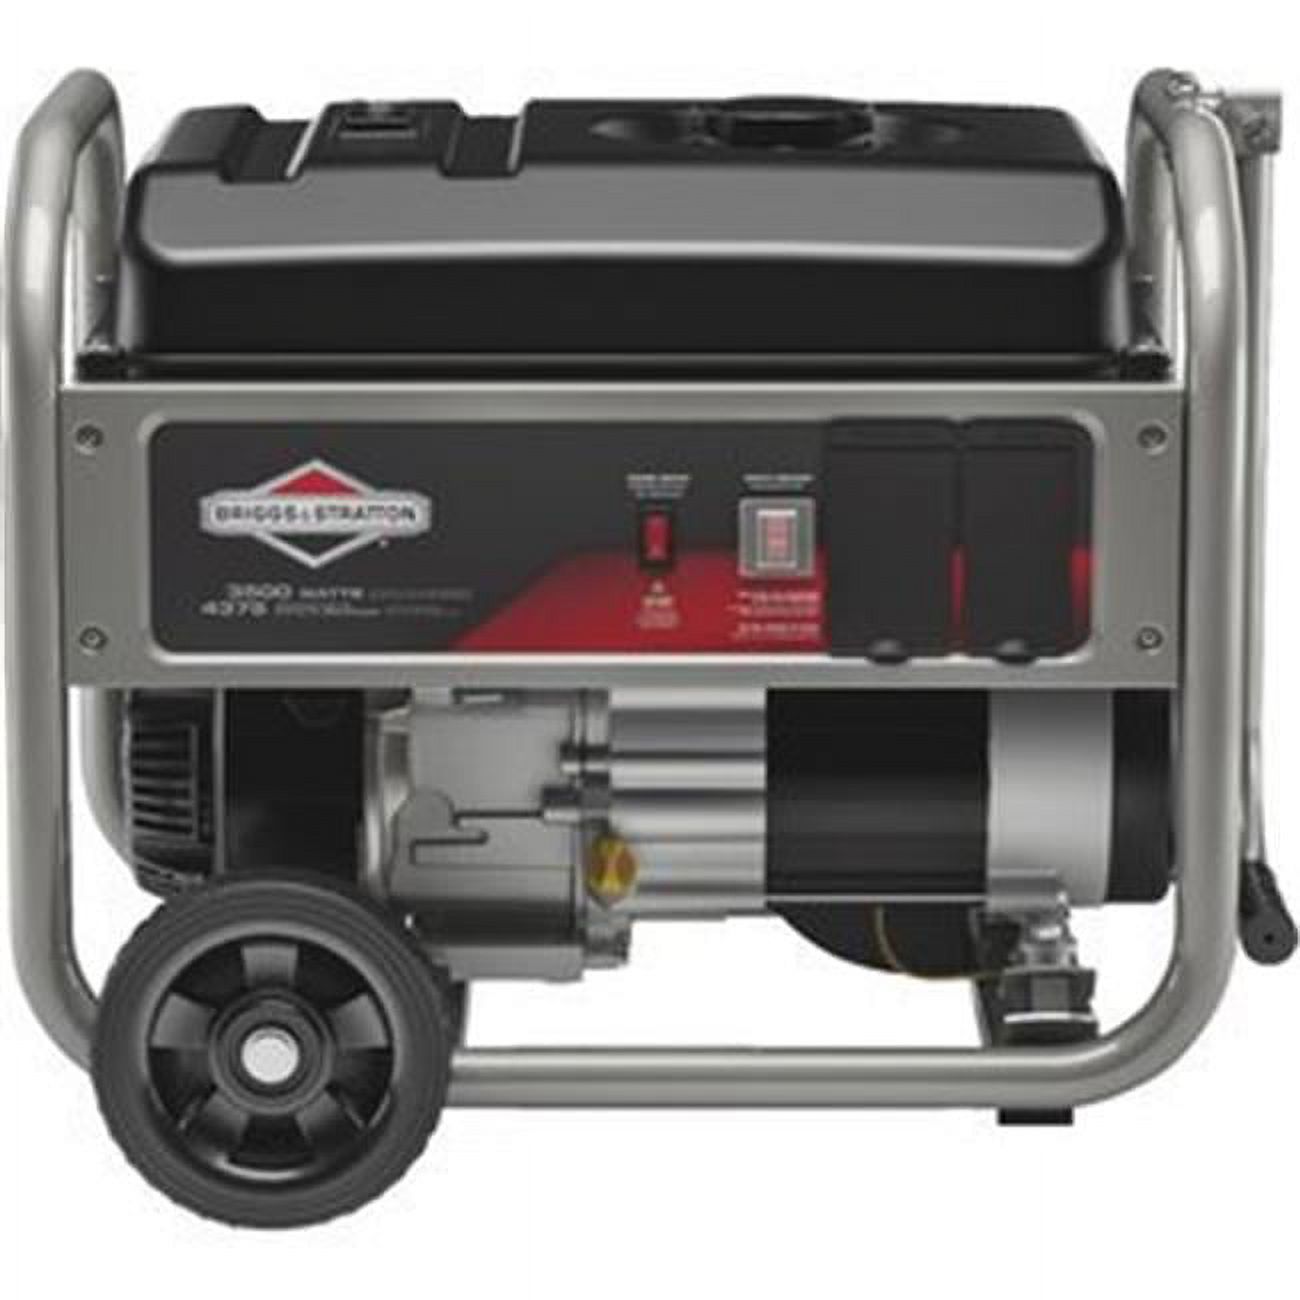 Briggs & Stratton 30712 3500W Portable Generator - image 1 of 2